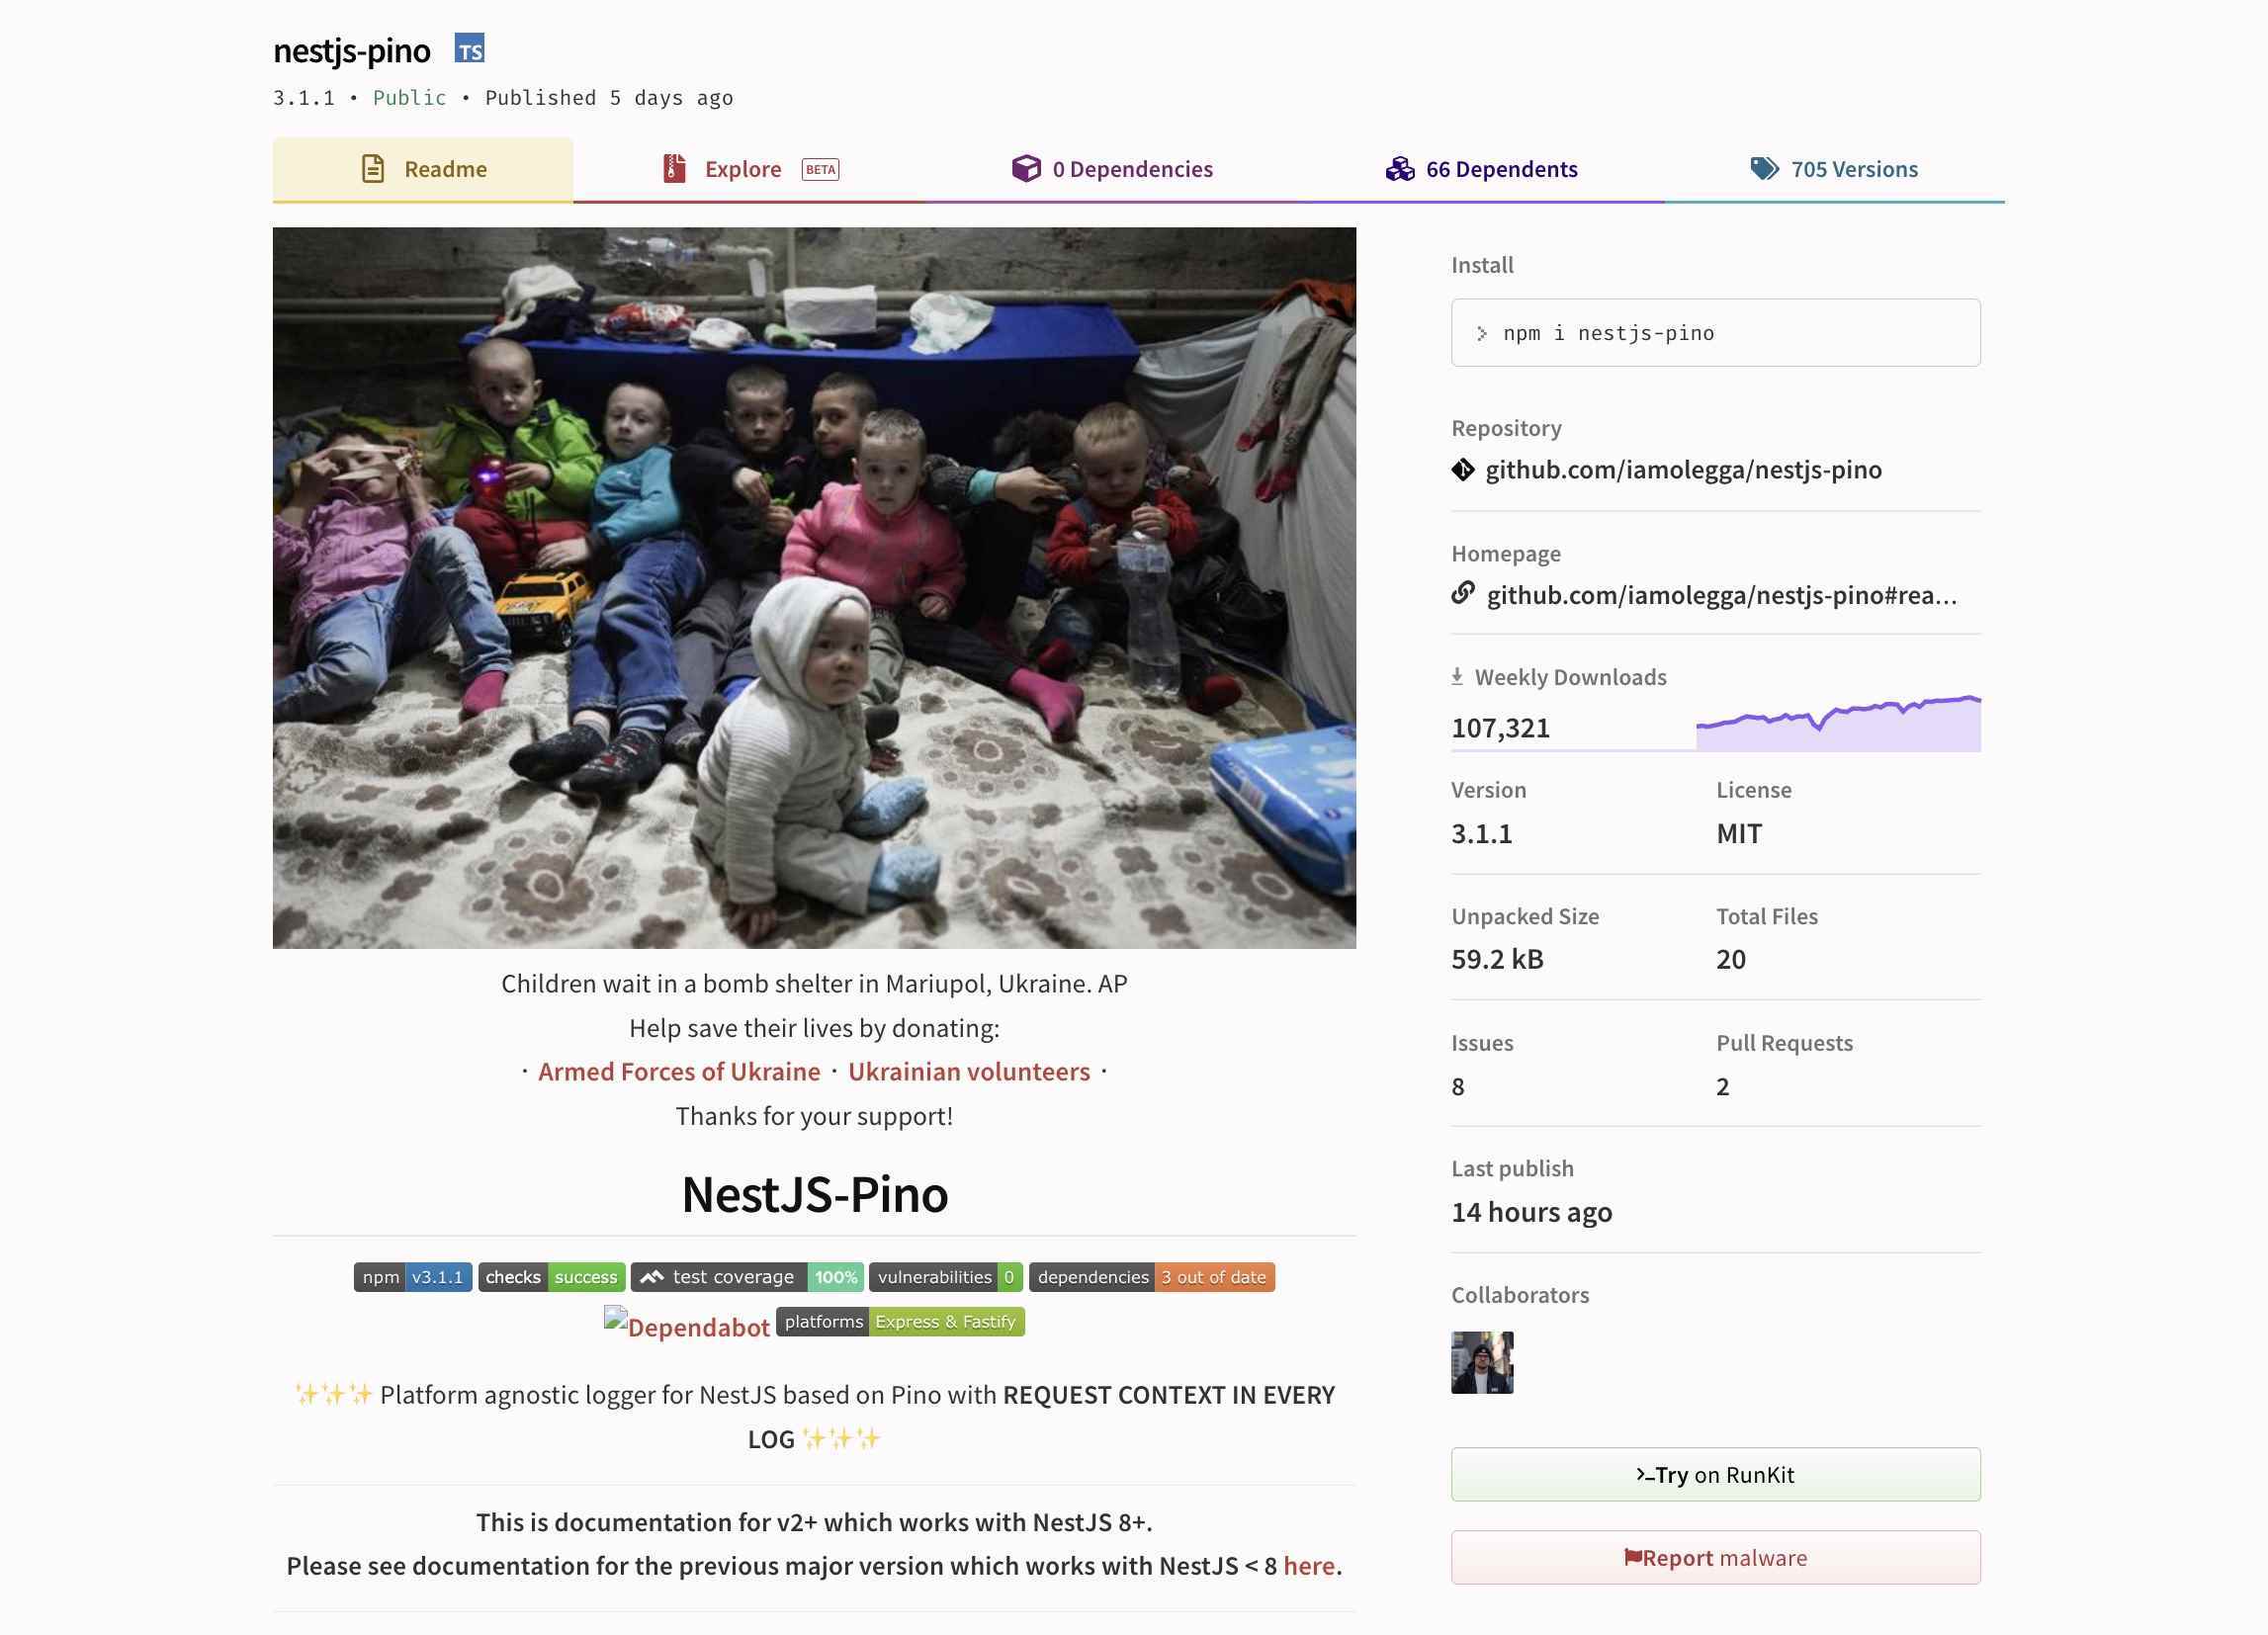 npm'deki nestjs-pino projesinin ekran görüntüsü, savaş zamanındaki Ukrayna'nın bir fotoğrafını şu başlıkla gösteriyor: "Ukrayna'da Savaş Çocuklar Ukrayna'nın Mariupol kentinde bir sığınakta bekliyor."